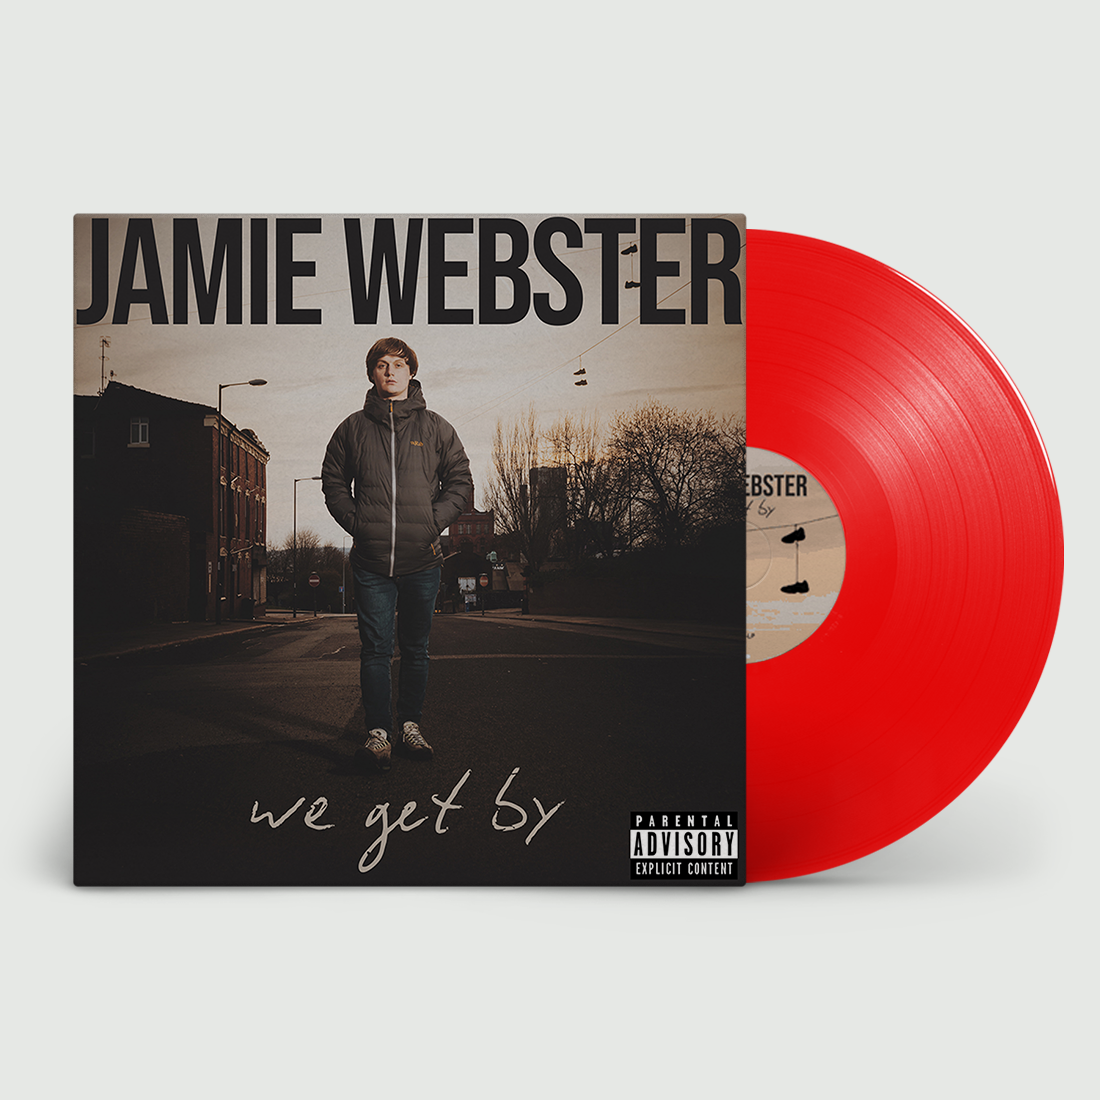 JAMIE WEBSTER - We Get By - LP Limited Red Vinyl